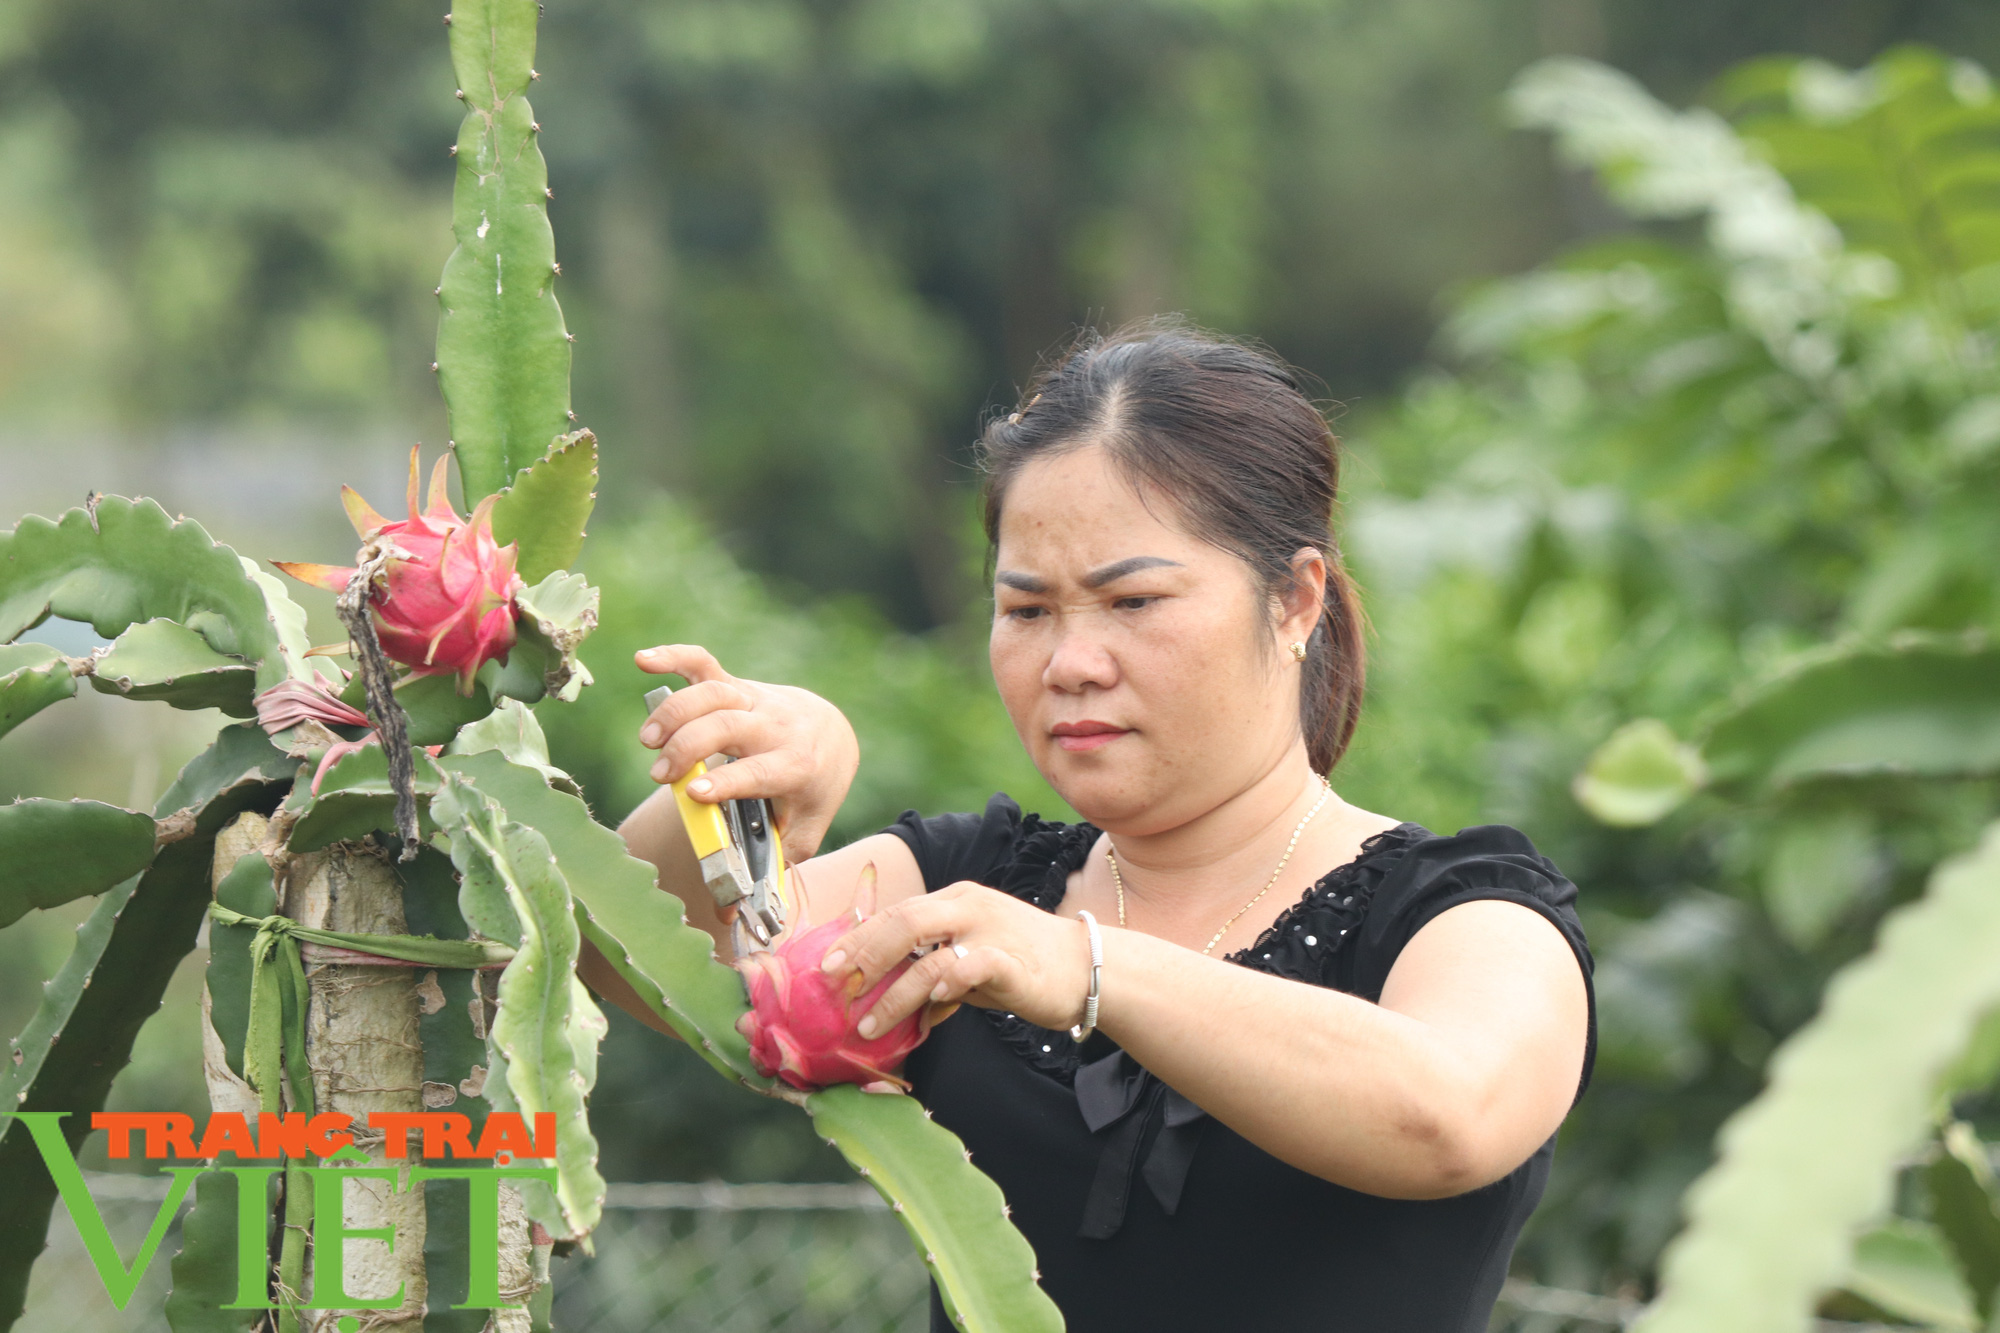 Nông dân Thuận Châu làm trụ trên nương để có thu nhập hơn trồng ngô lúa - Ảnh 3.